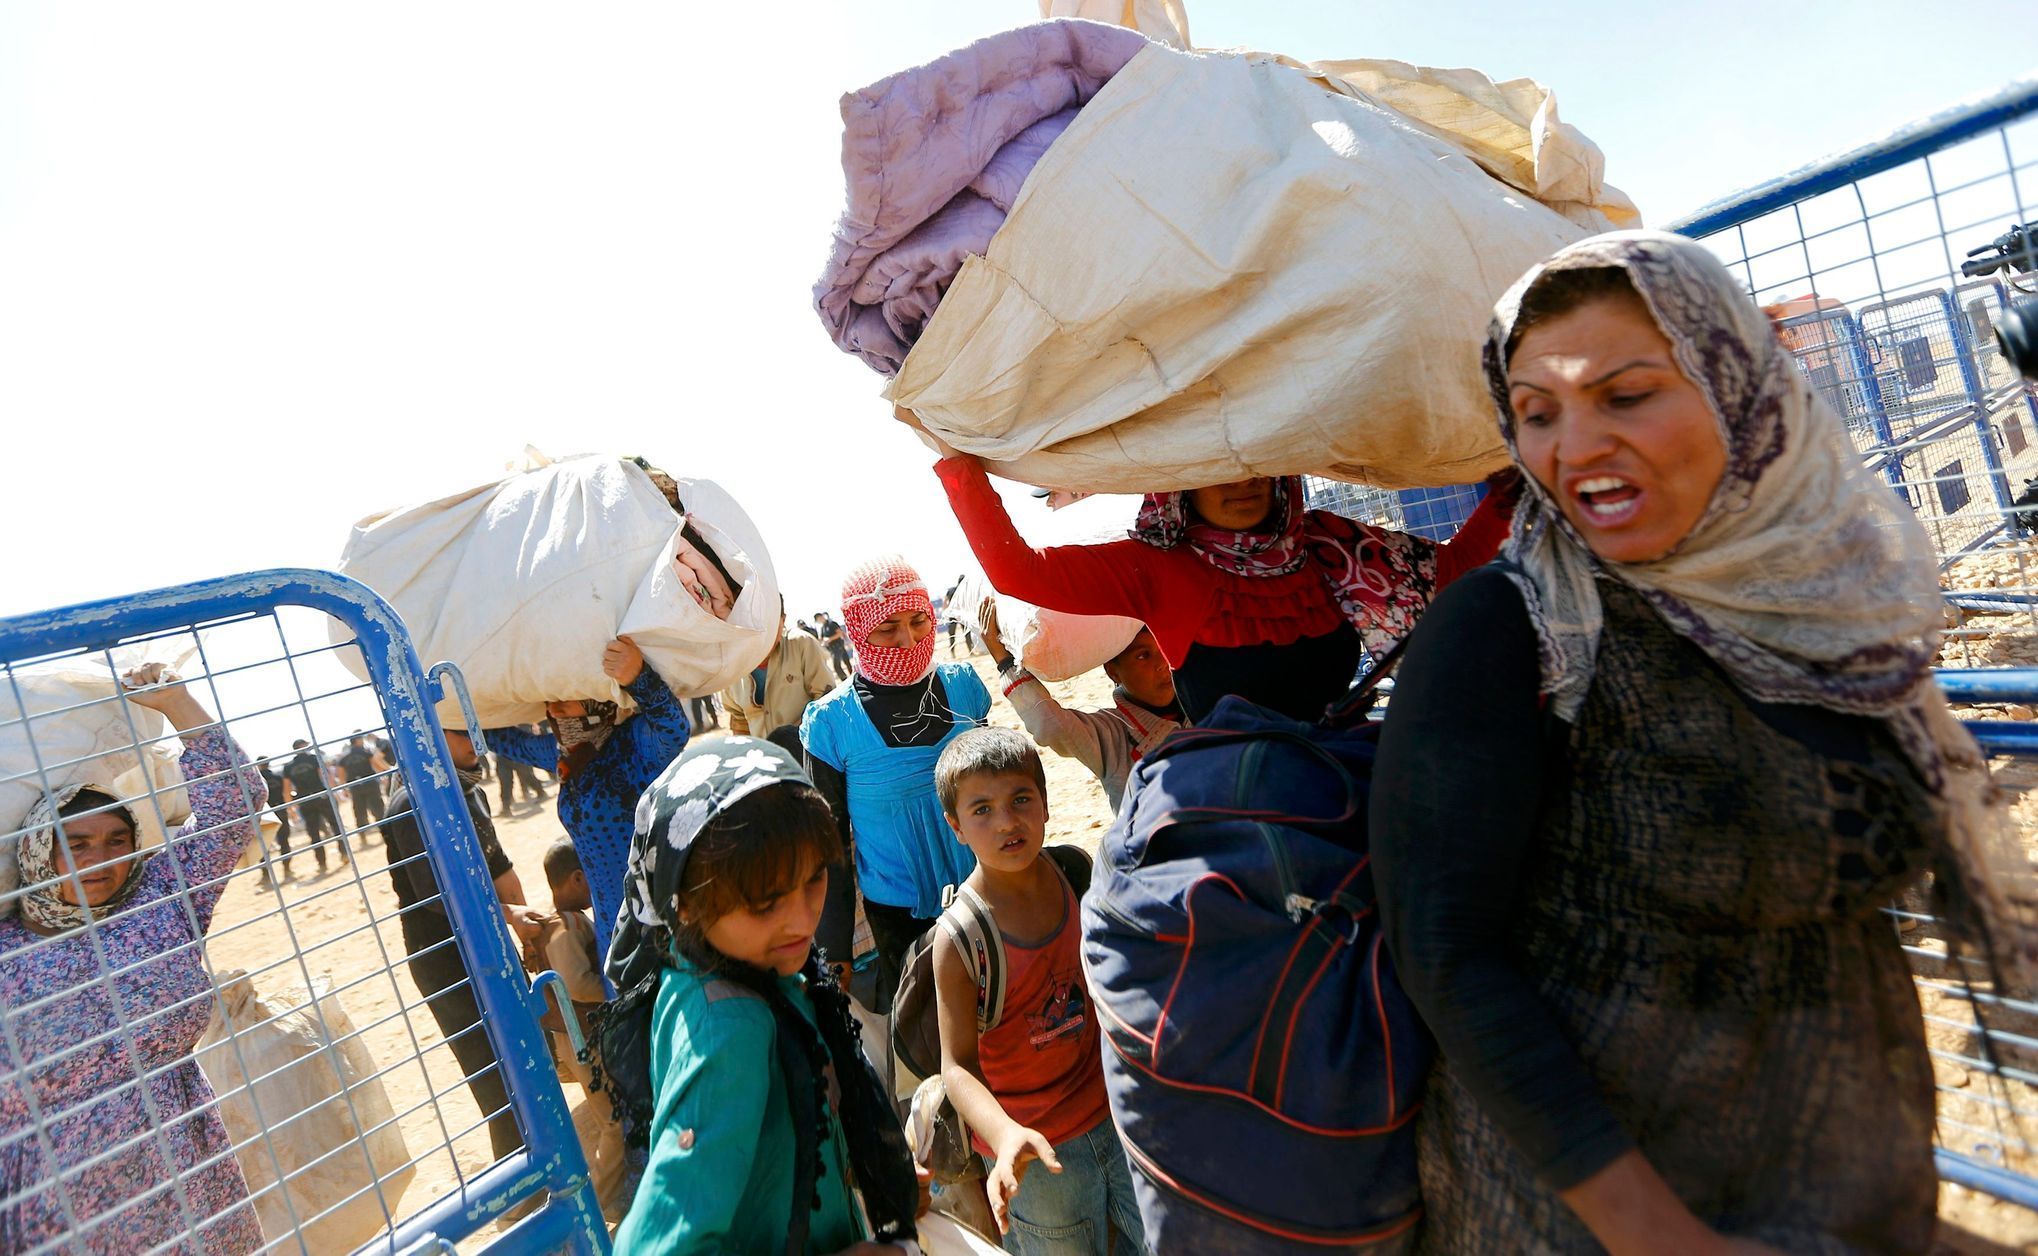 Kurdští uprchlíci na syrsko-turecké hranici.